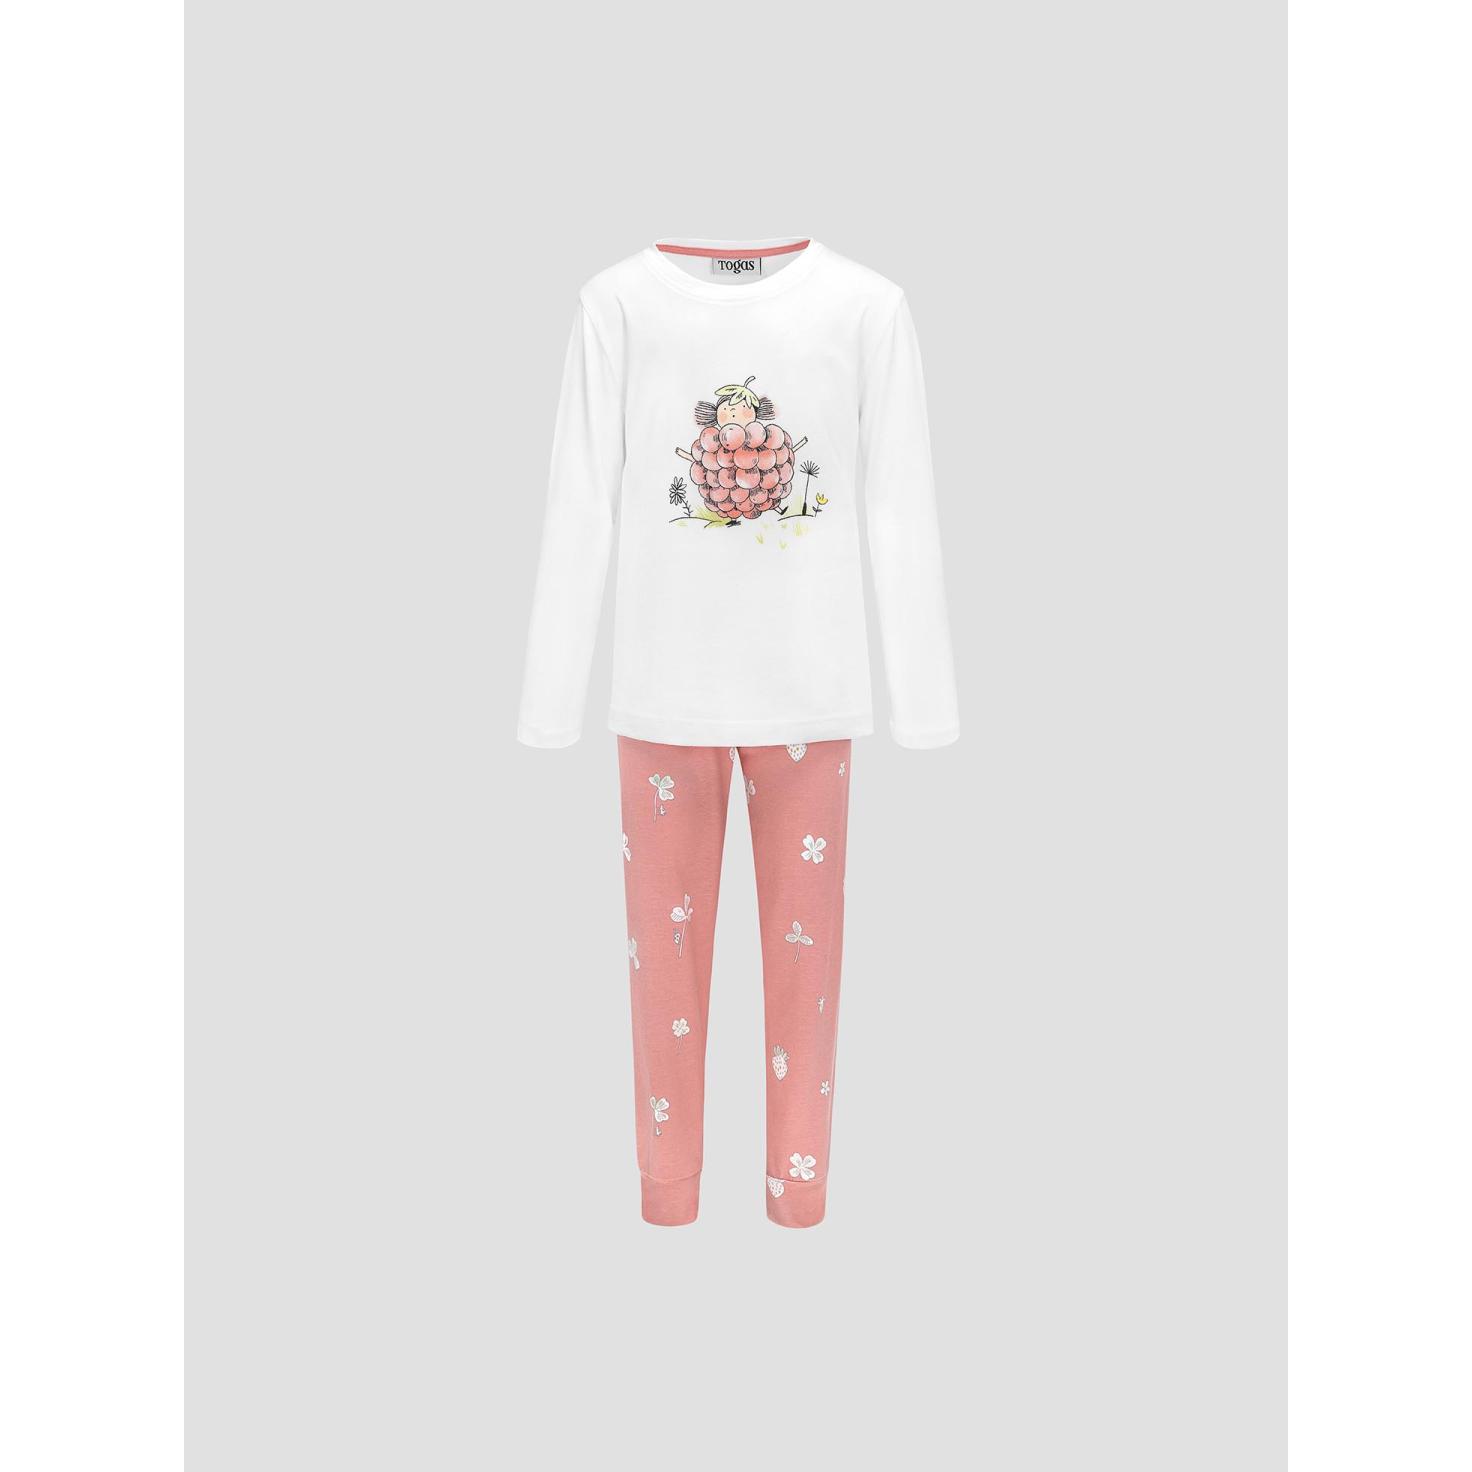 Пижама для девочек Kids by togas Стробби бело-розовый 128-134 см жен пижама с брюками пастила розовый р 48